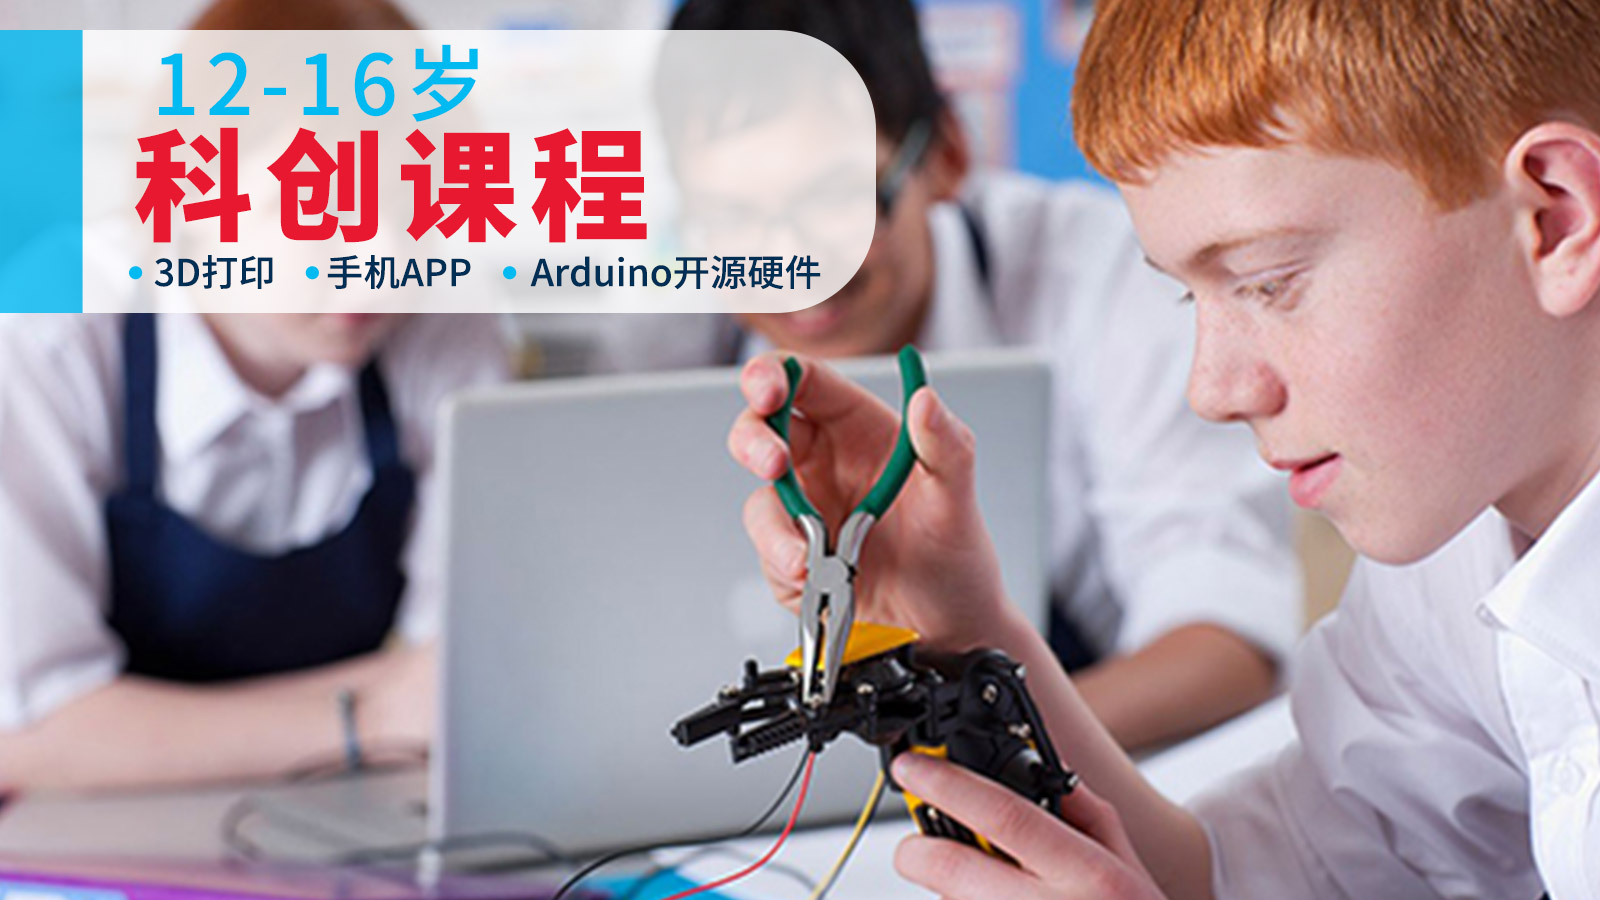 上海森孚机器人教育12-16岁科创课程图片